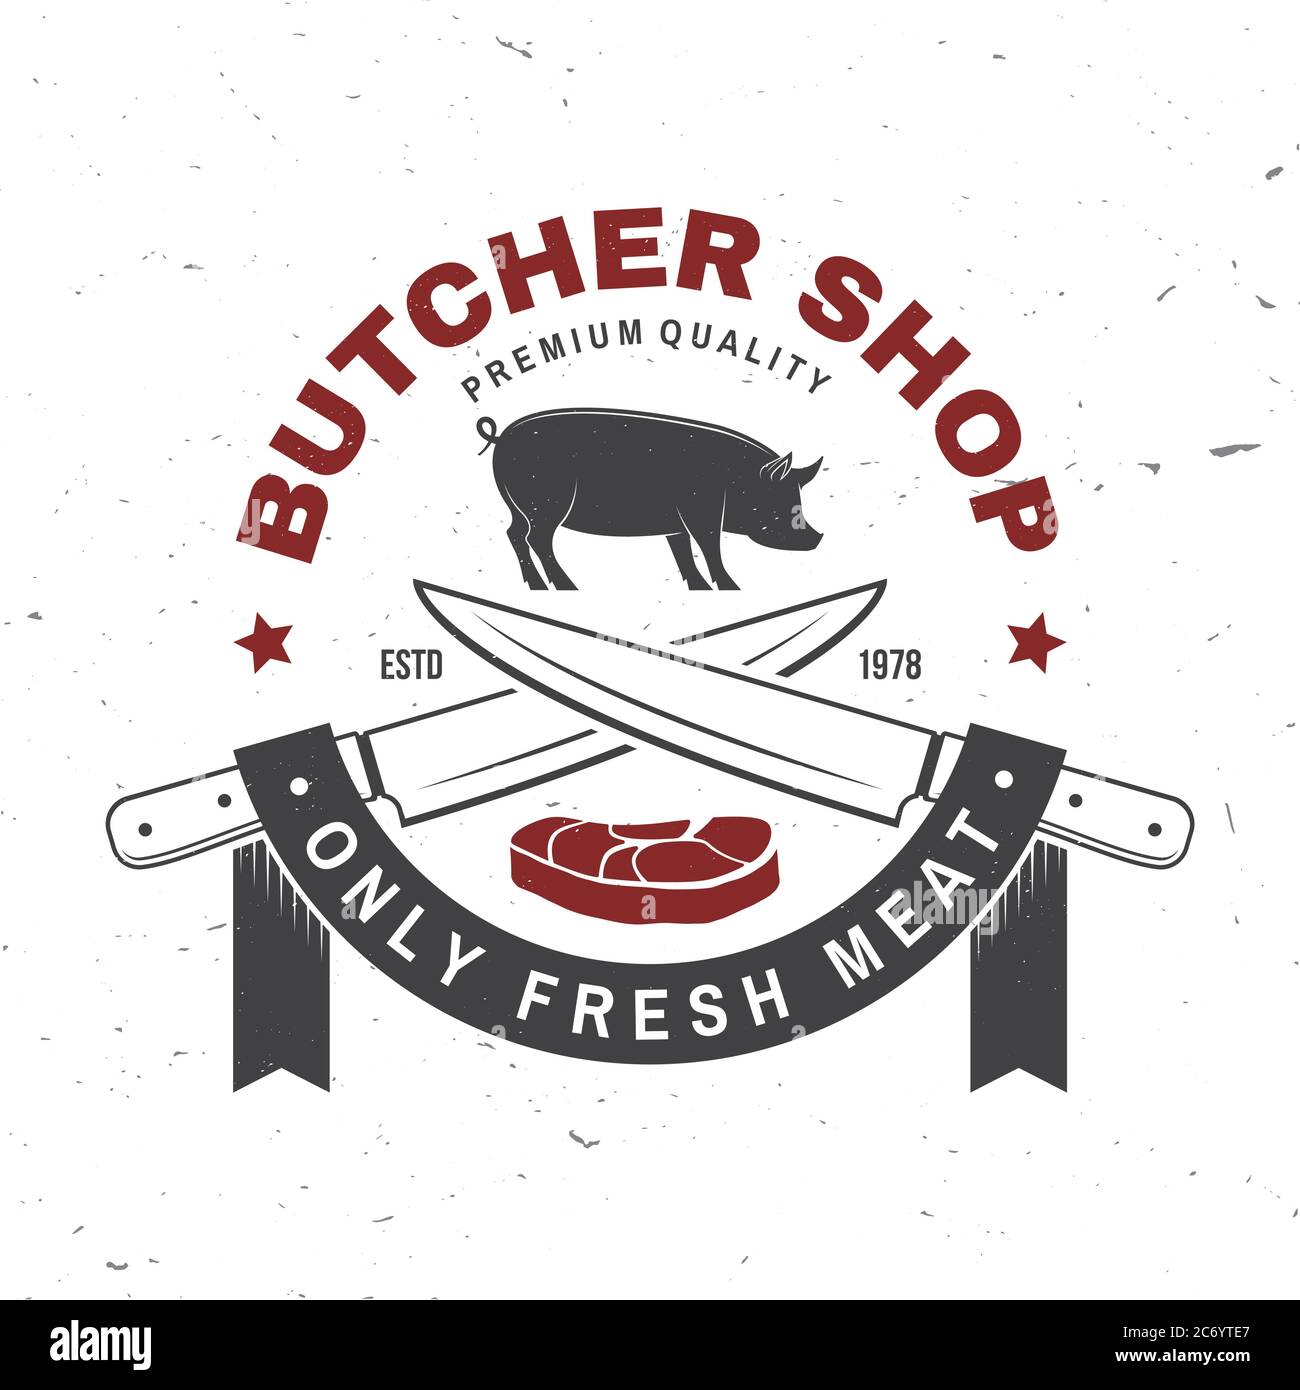 Carnicería Bidge o etiqueta con cerdo, cerdo, bistec y cuchillo de cocina.  Vector. Diseño de logotipo tipográfico vintage con cerdo, cerdo, bistec,  silueta de cuchillo de cocina. Tienda de carne, mercado, restaurante